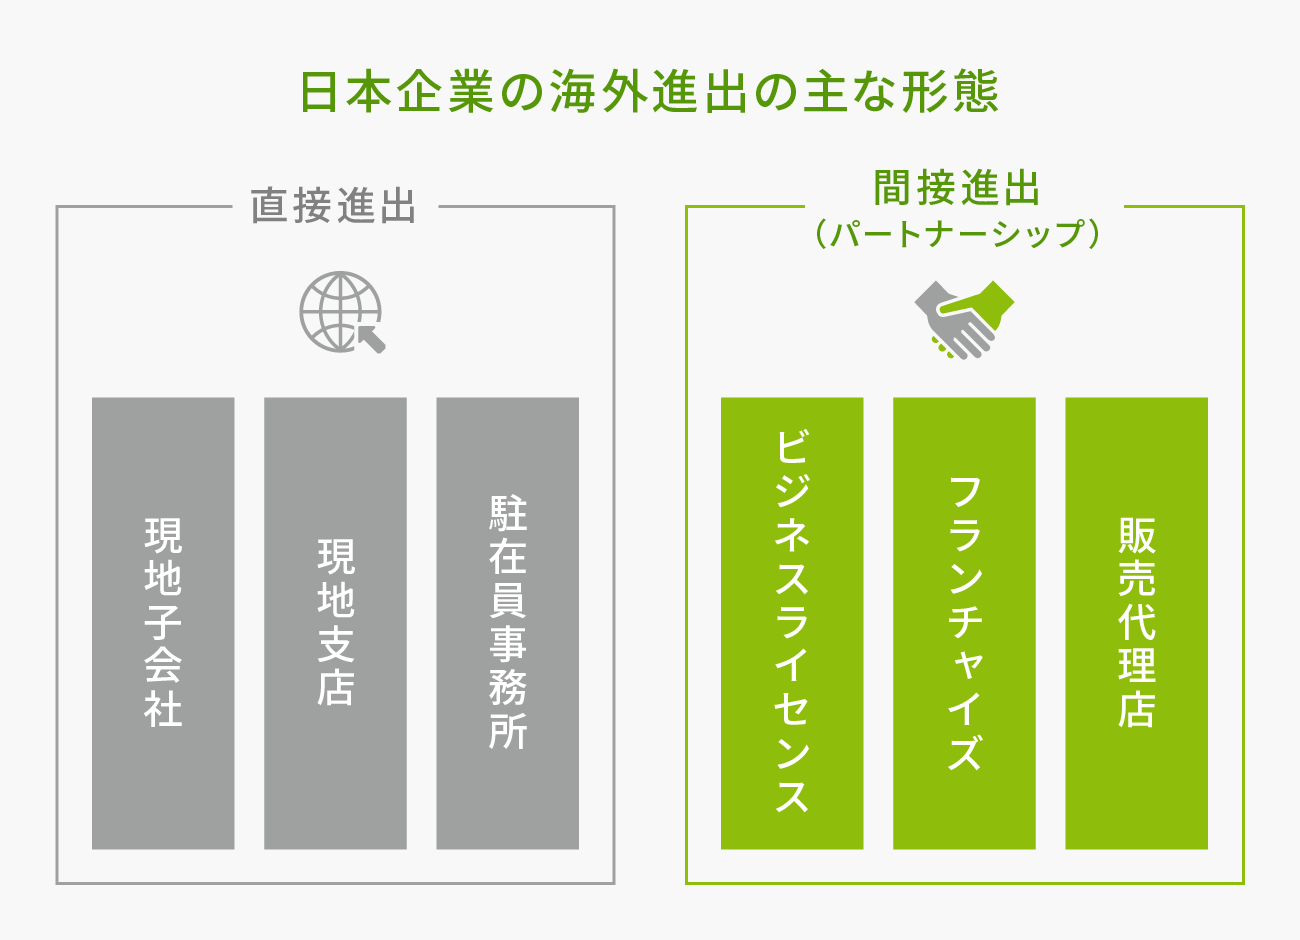 ■日本企業における海外進出の主な形態